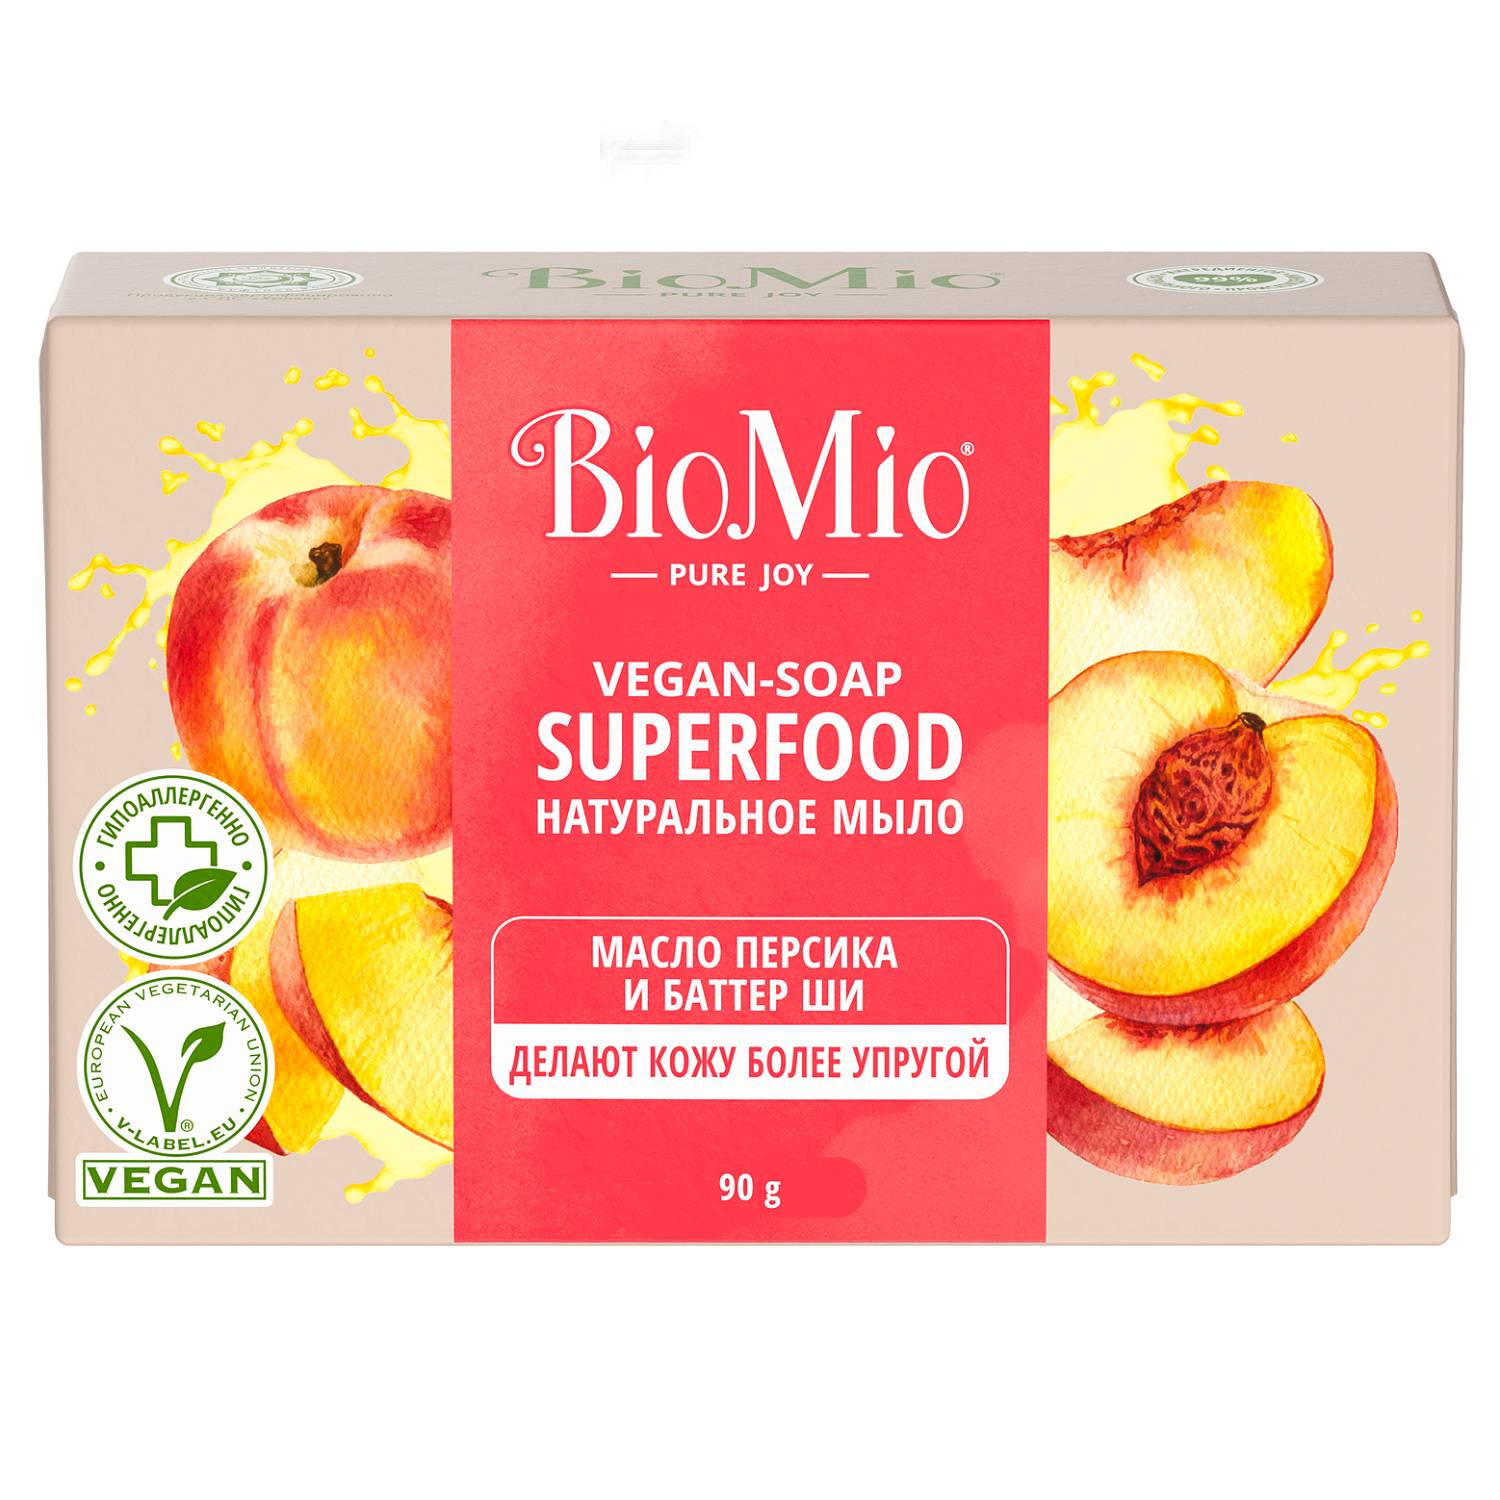 BioMio Натуральное мыло Персик и ши Vegan Soap Superfood, 90 г (BioMio, Мыло)